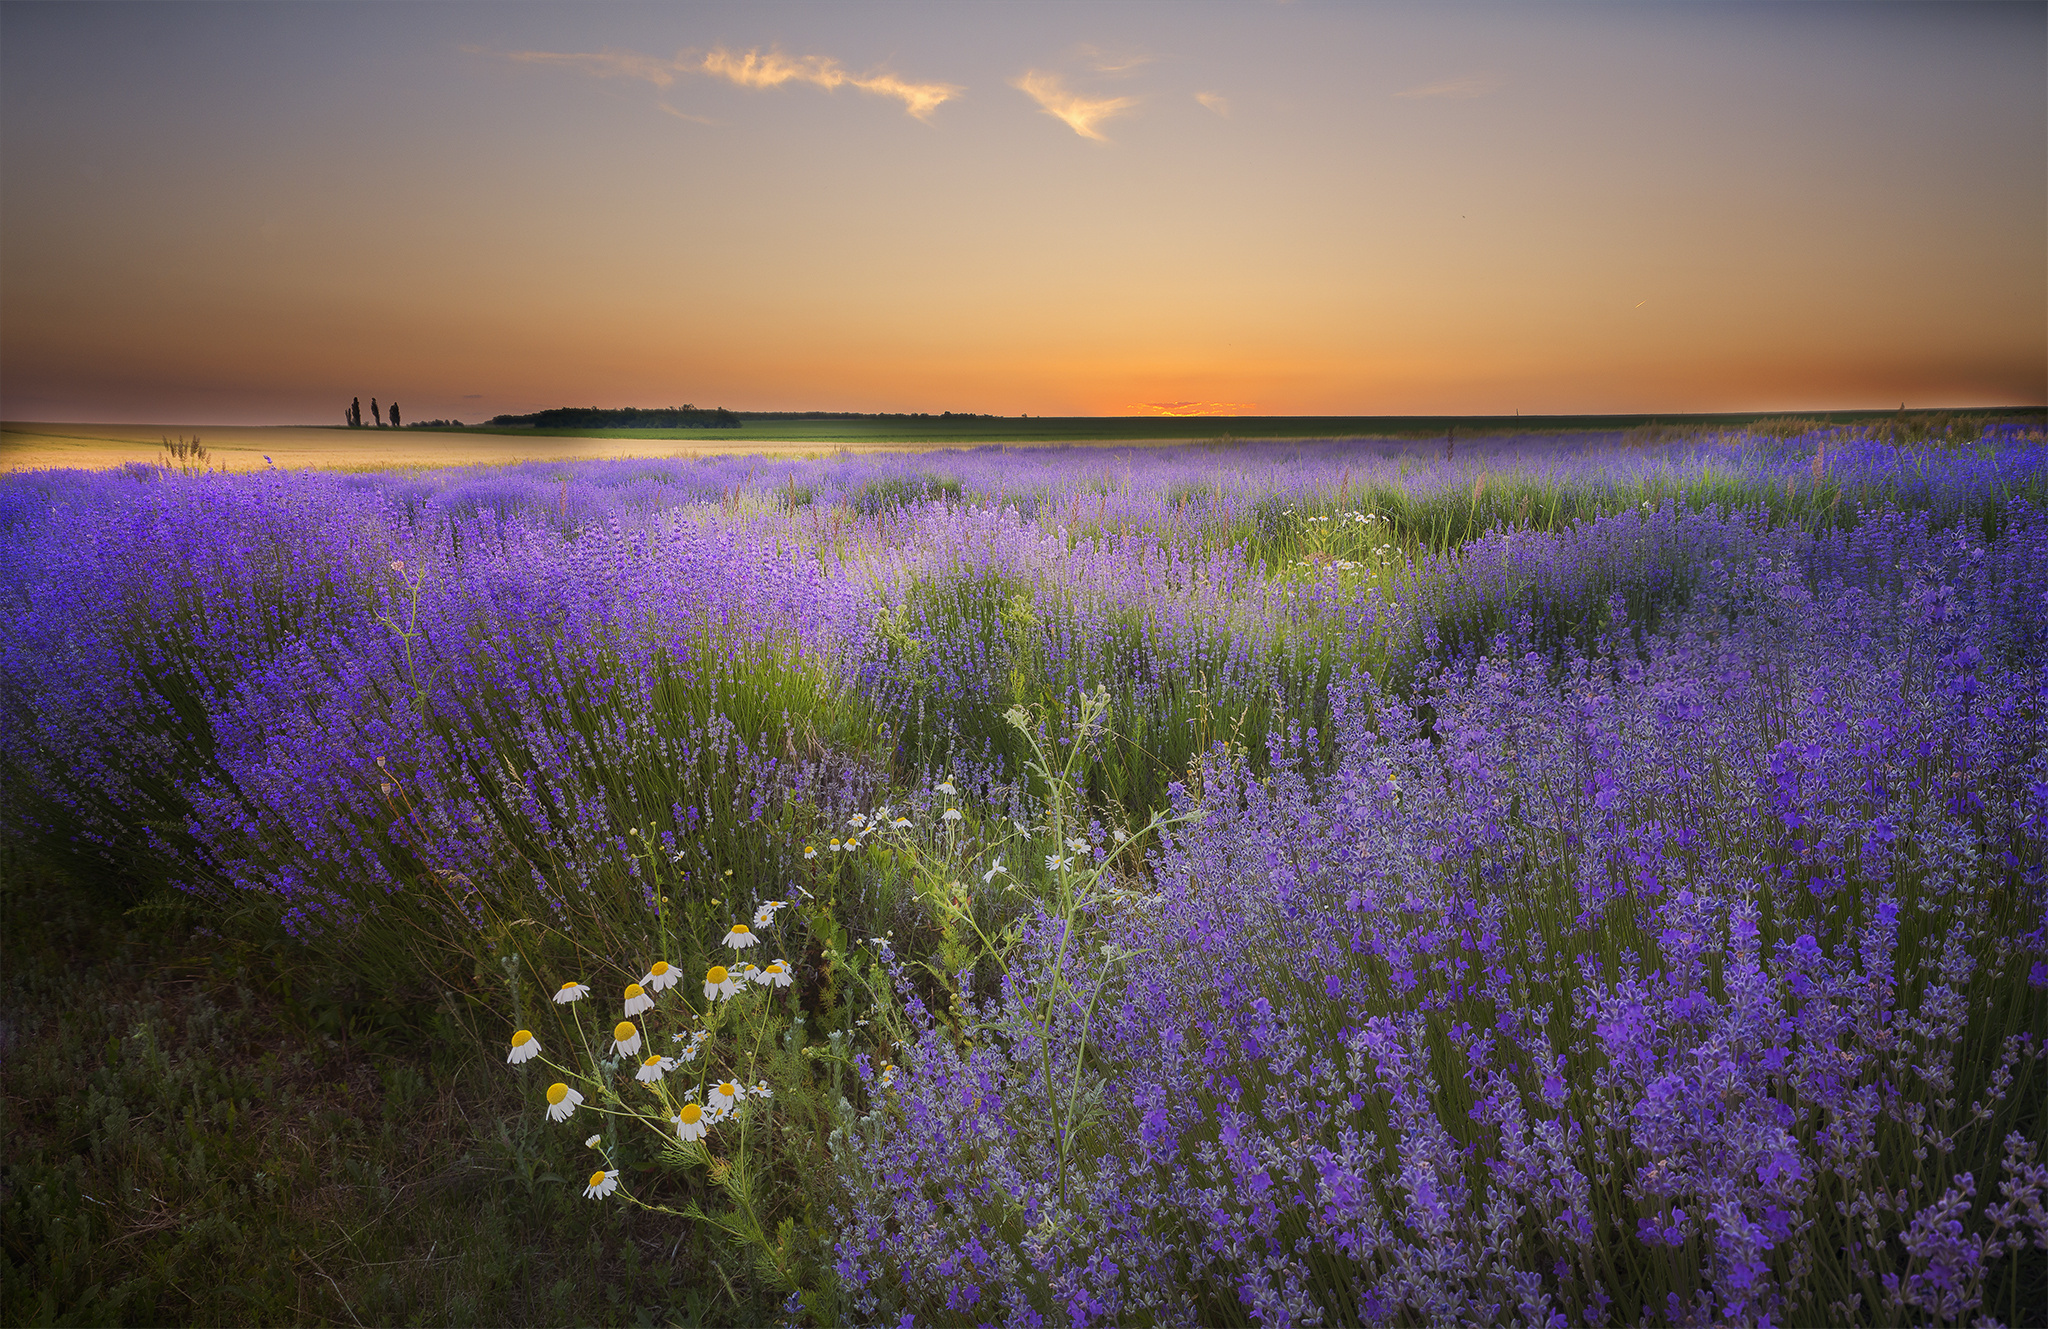  chamomile  lavender field Wallpaper  HD  Nature 4K 